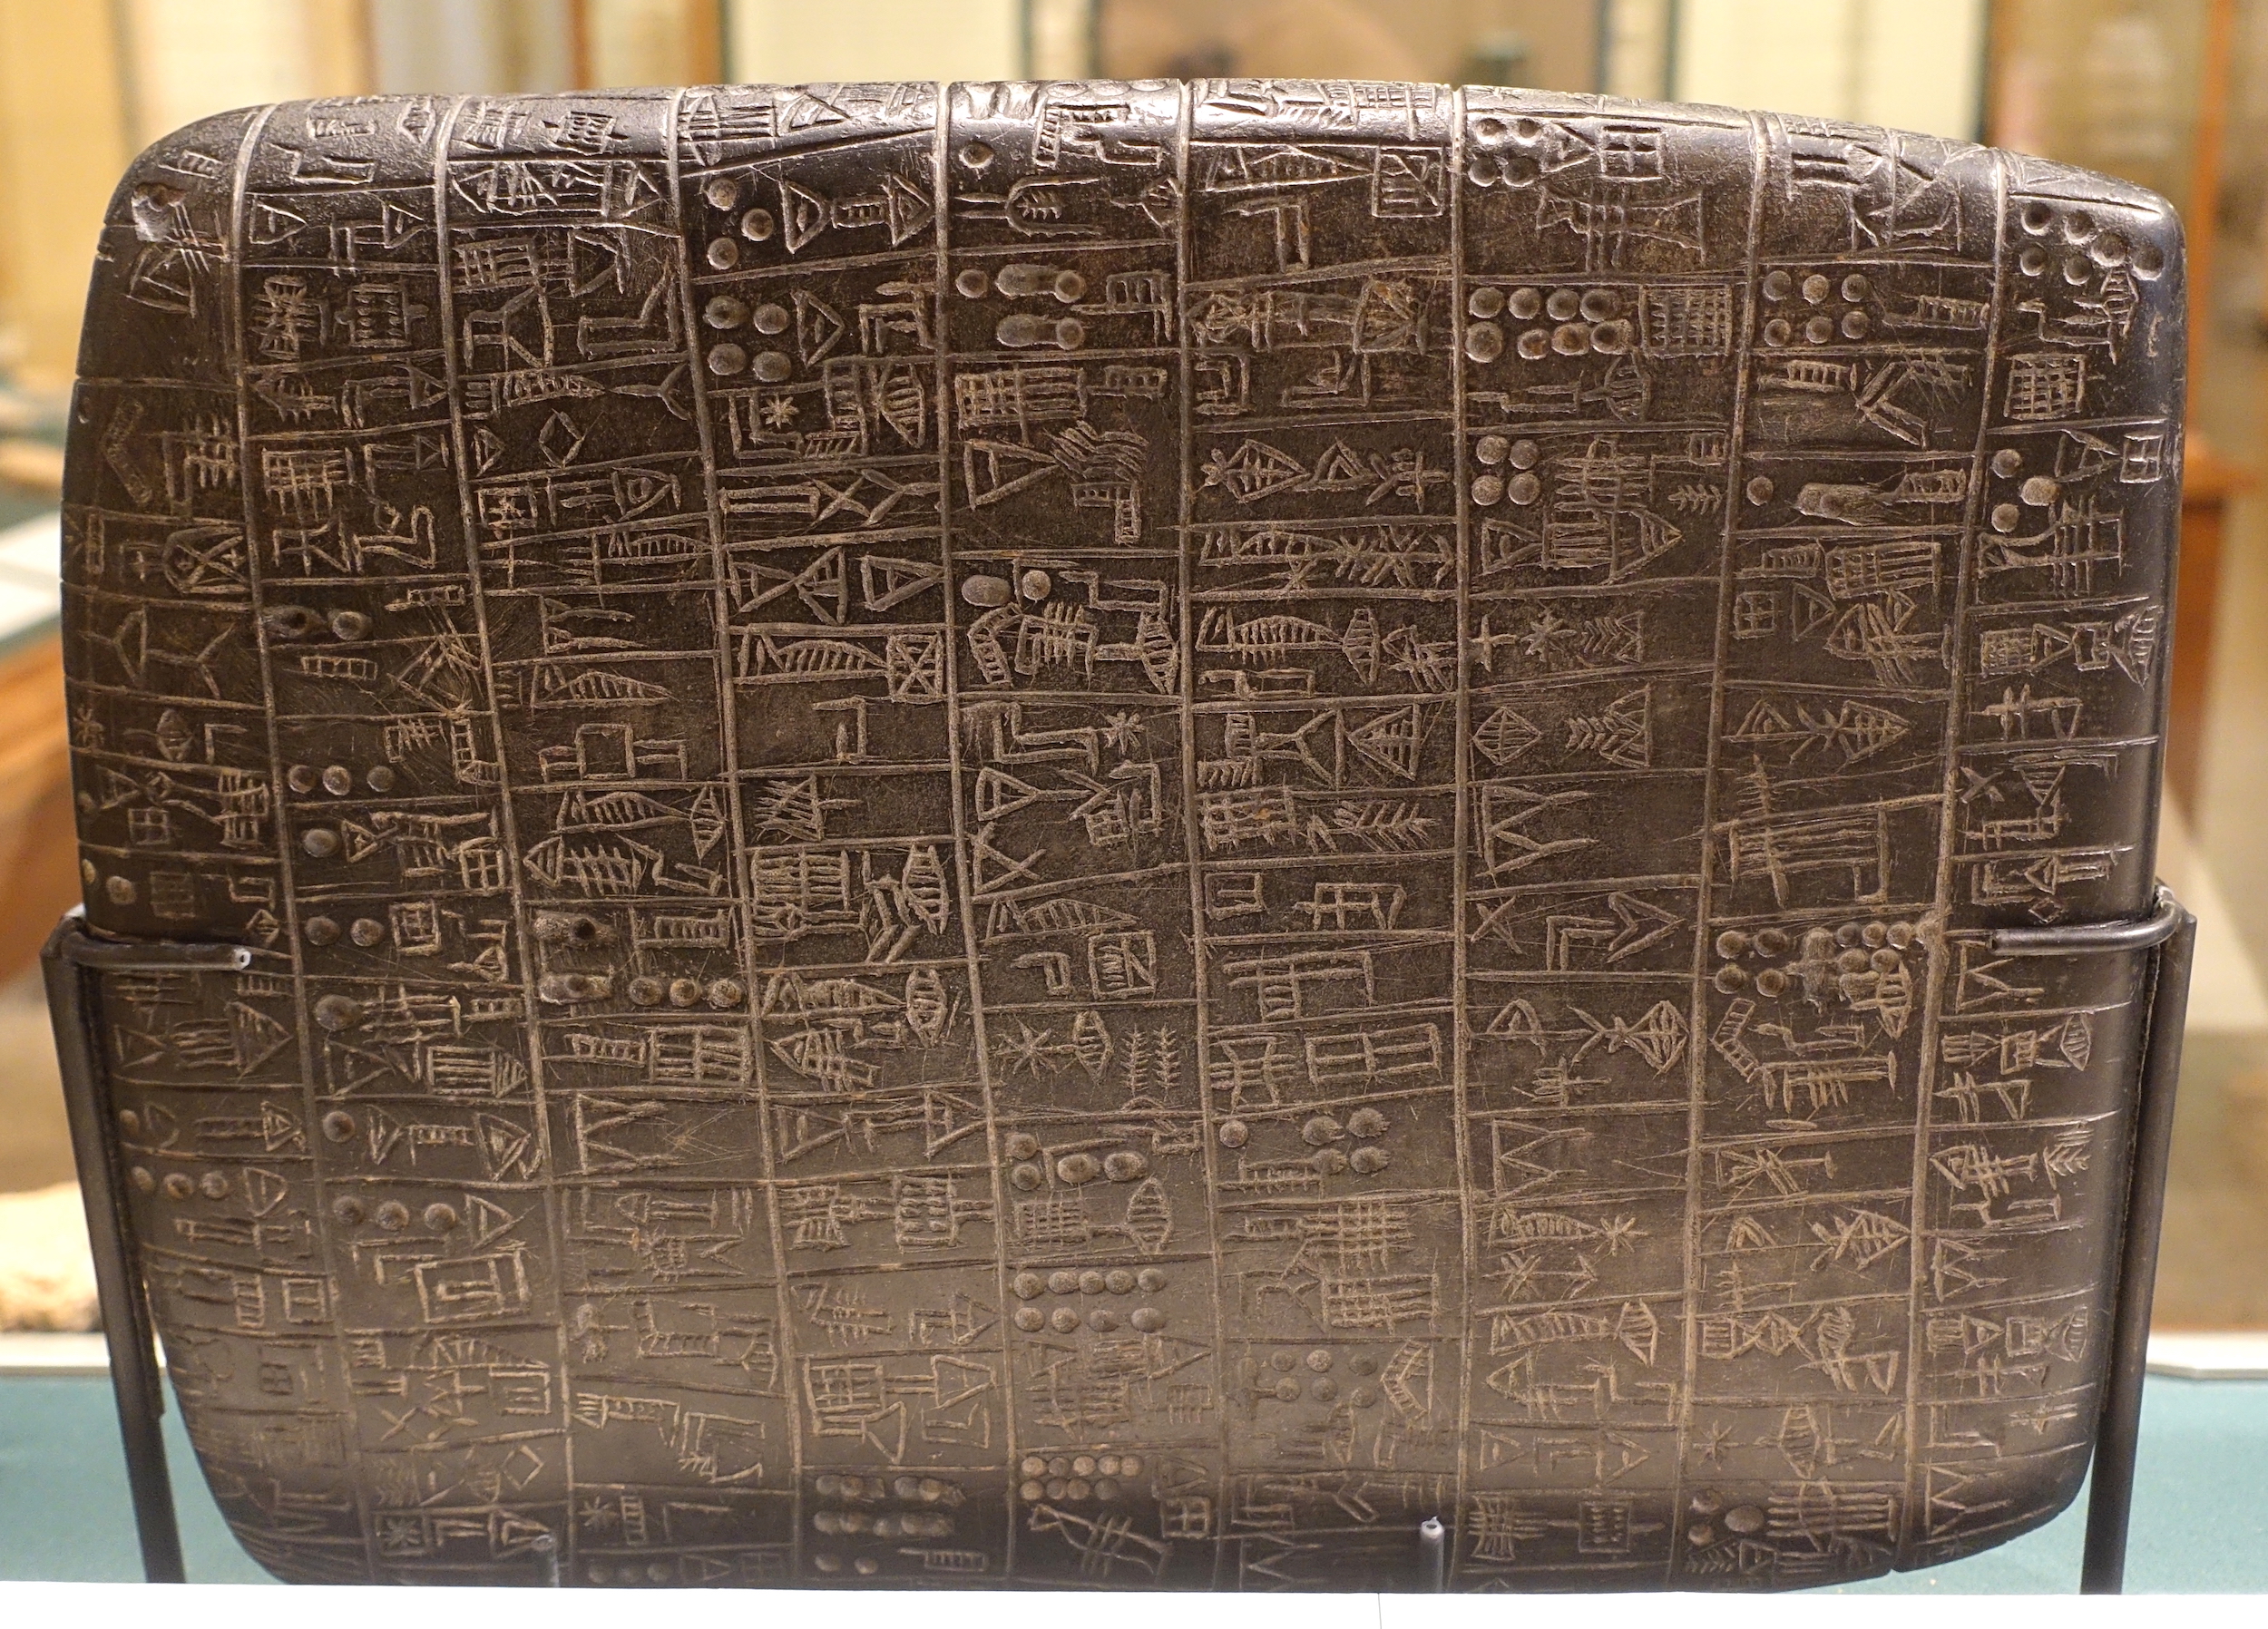 Tablette en basalte rapportant la vente de champs, provenance inconnue, v. 2600-2500 av. J.-C. Oriental Institute de Chicago.